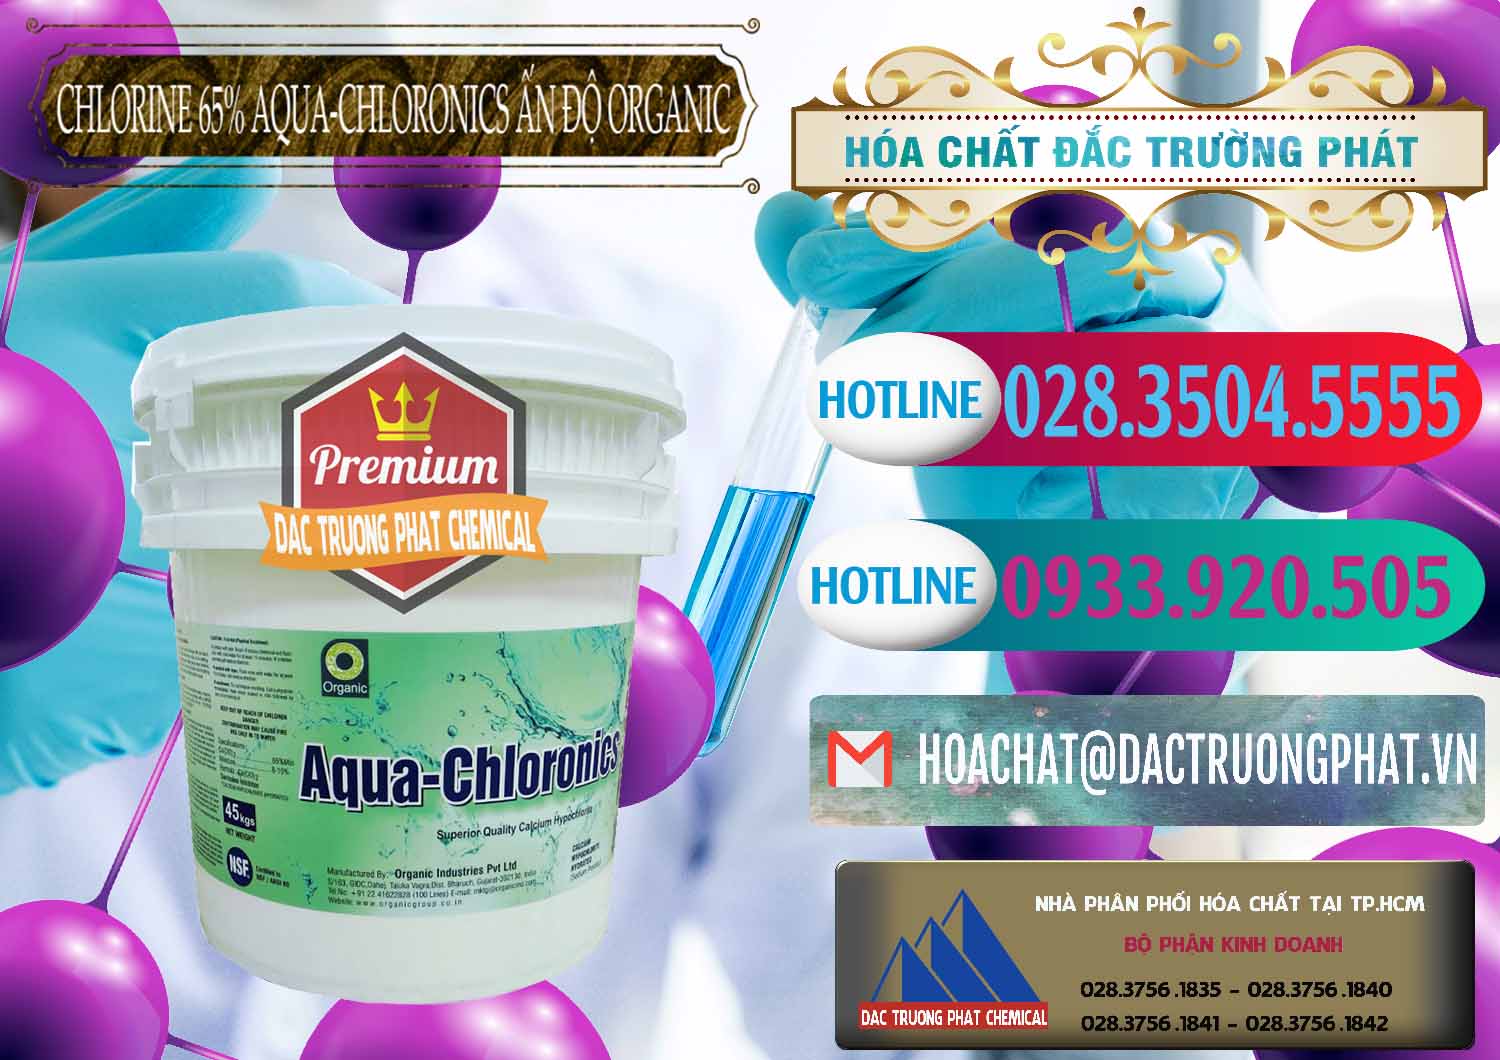 Kinh doanh ( bán ) Chlorine – Clorin 65% Aqua-Chloronics Ấn Độ Organic India - 0210 - Nơi chuyên kinh doanh - phân phối hóa chất tại TP.HCM - truongphat.vn